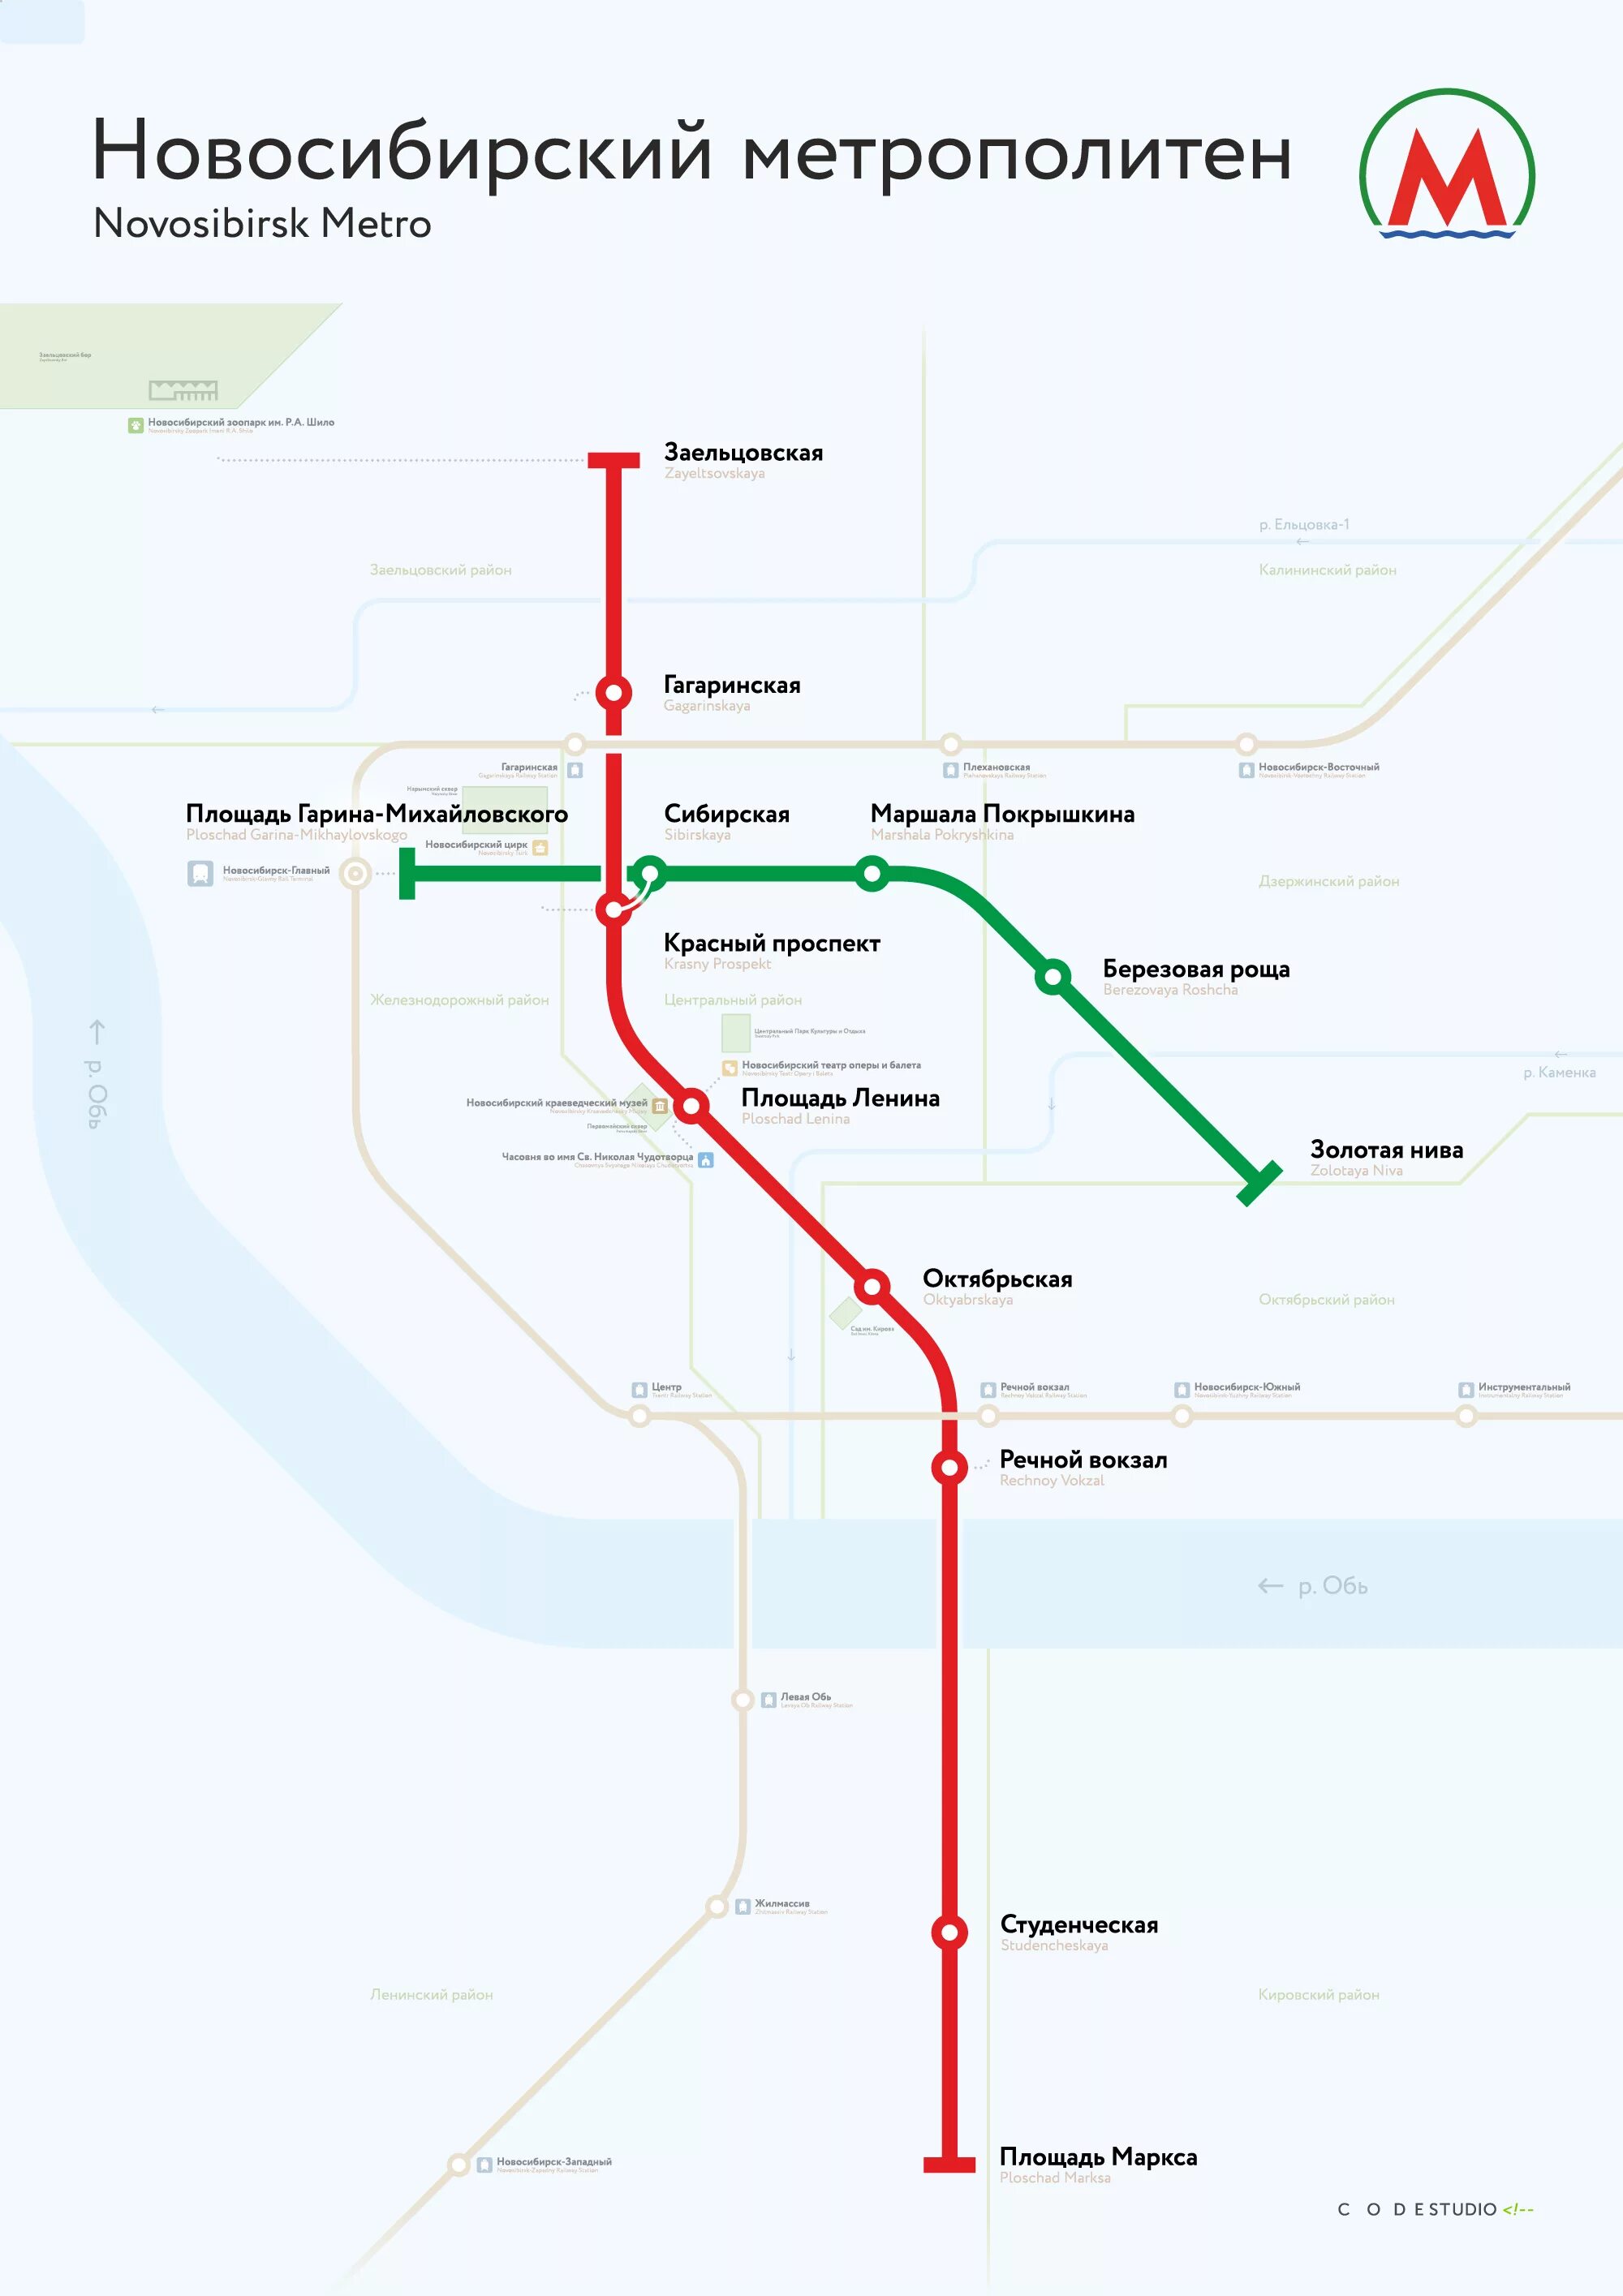 Сколько станций в новосибирском. Схема метро Новосибирска 2021. Схема метро Новосибирска 2020. Новосибирский метрополитен схема 2021. Метрополитен Новосибирск схема 2020.